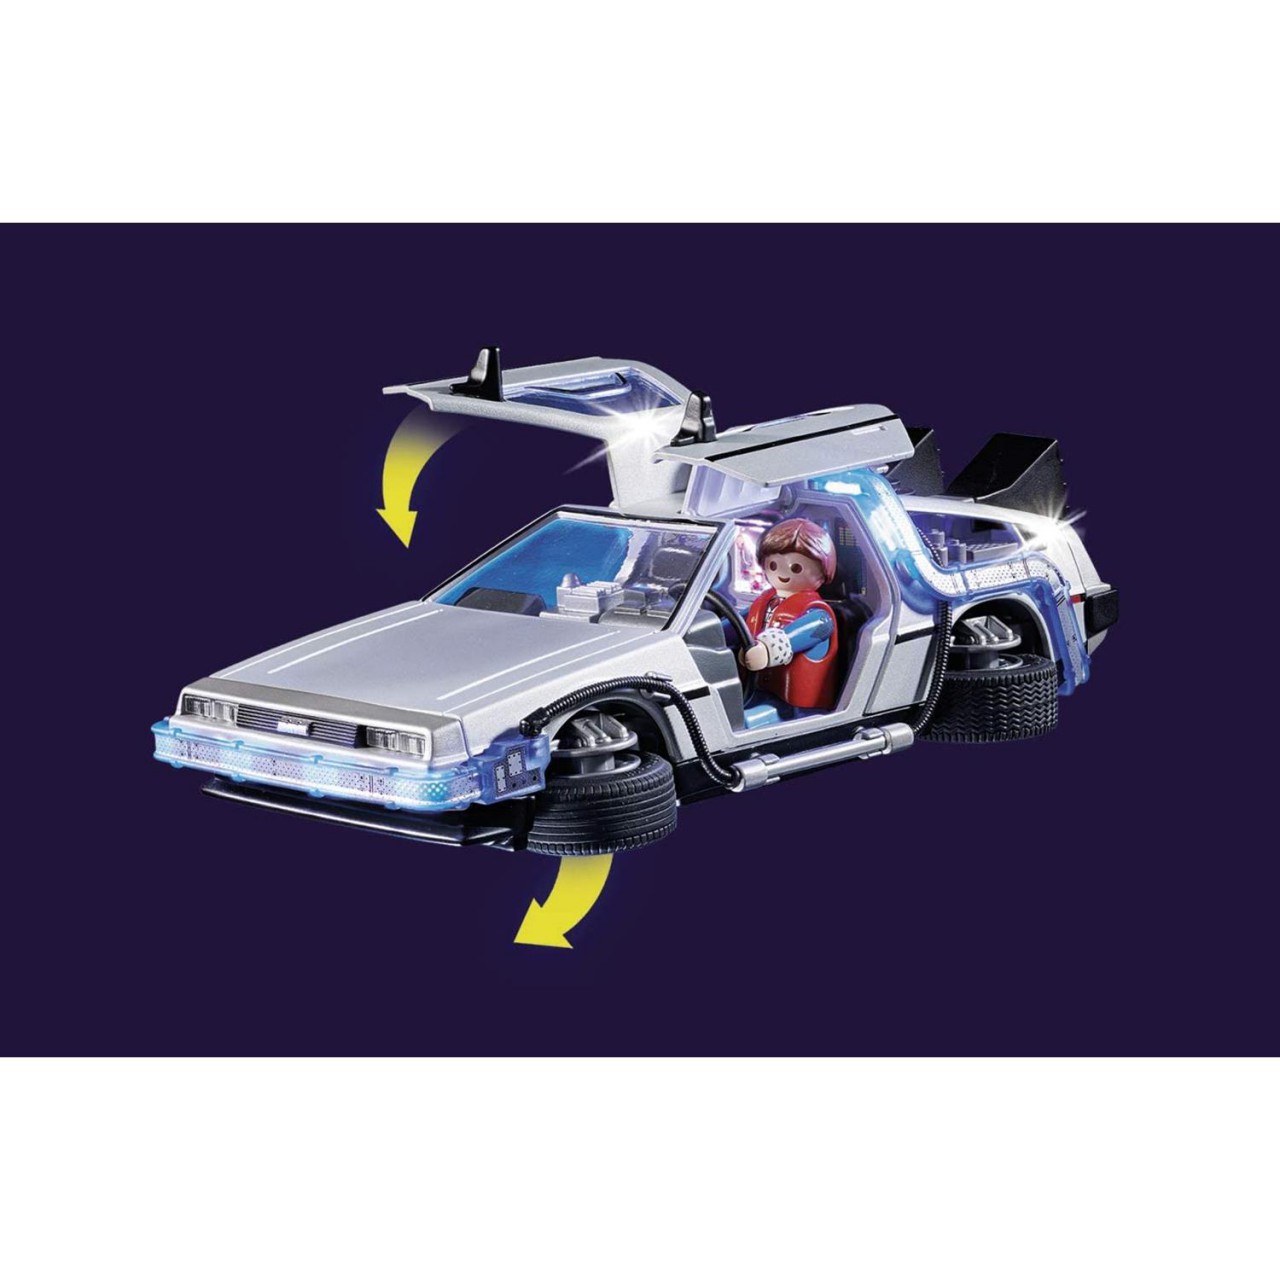 Playmobil 70317 Back to the Future DeLorean